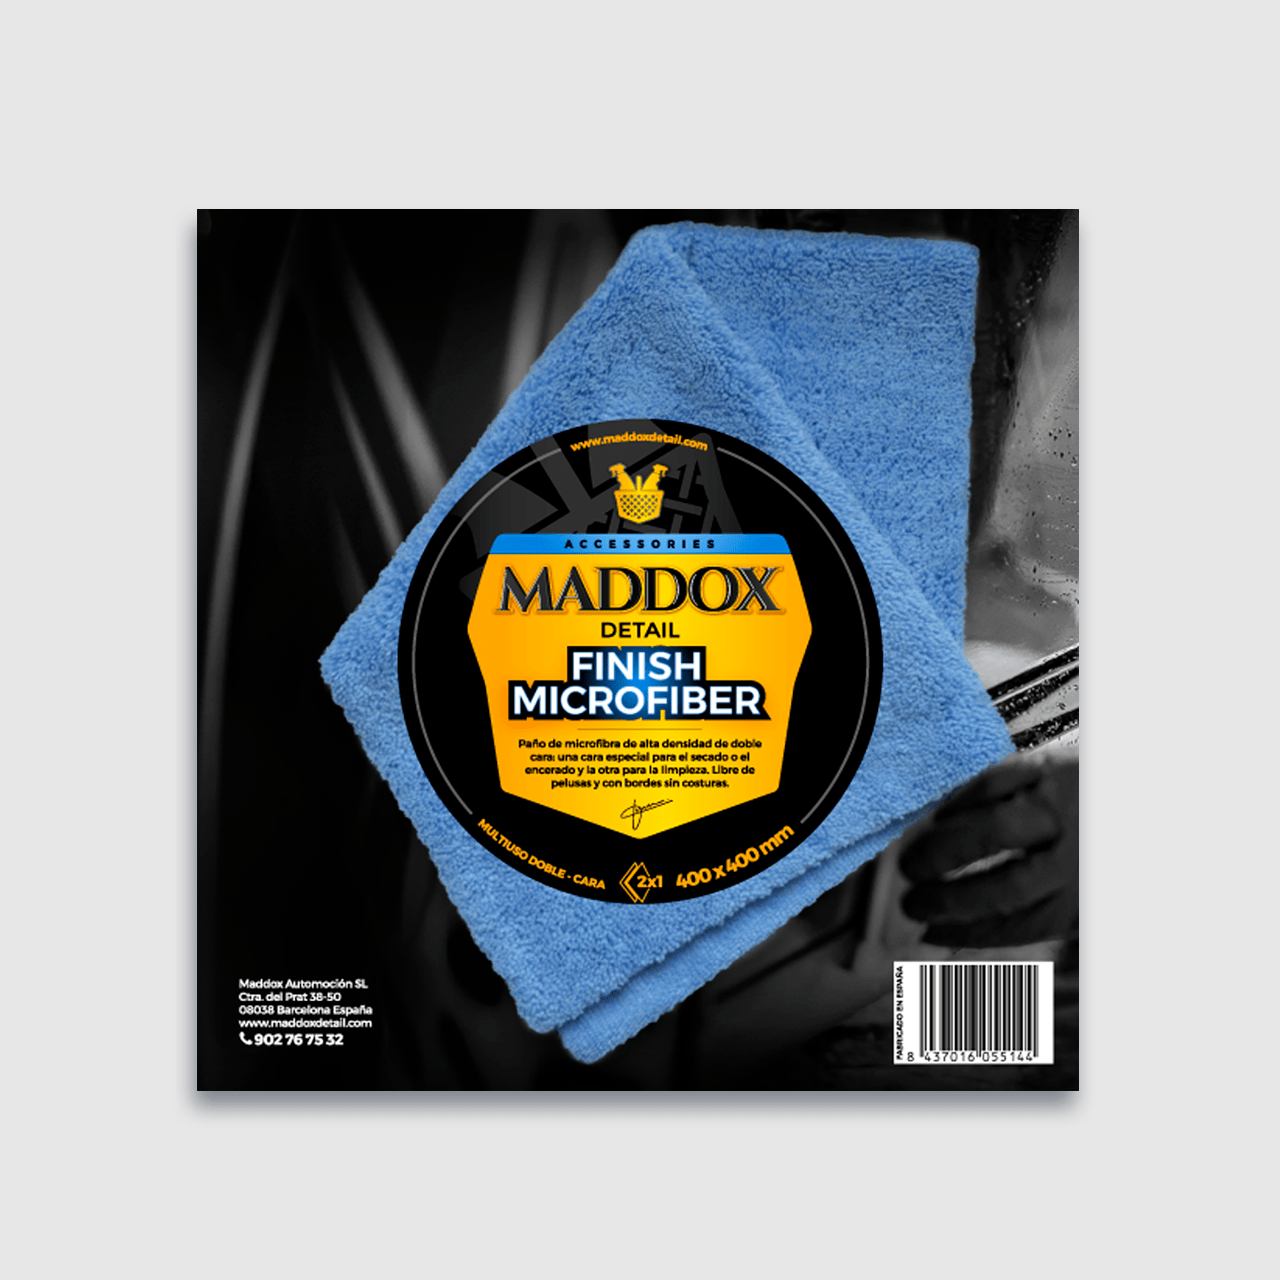 maddox-finish-microfiber-01-w